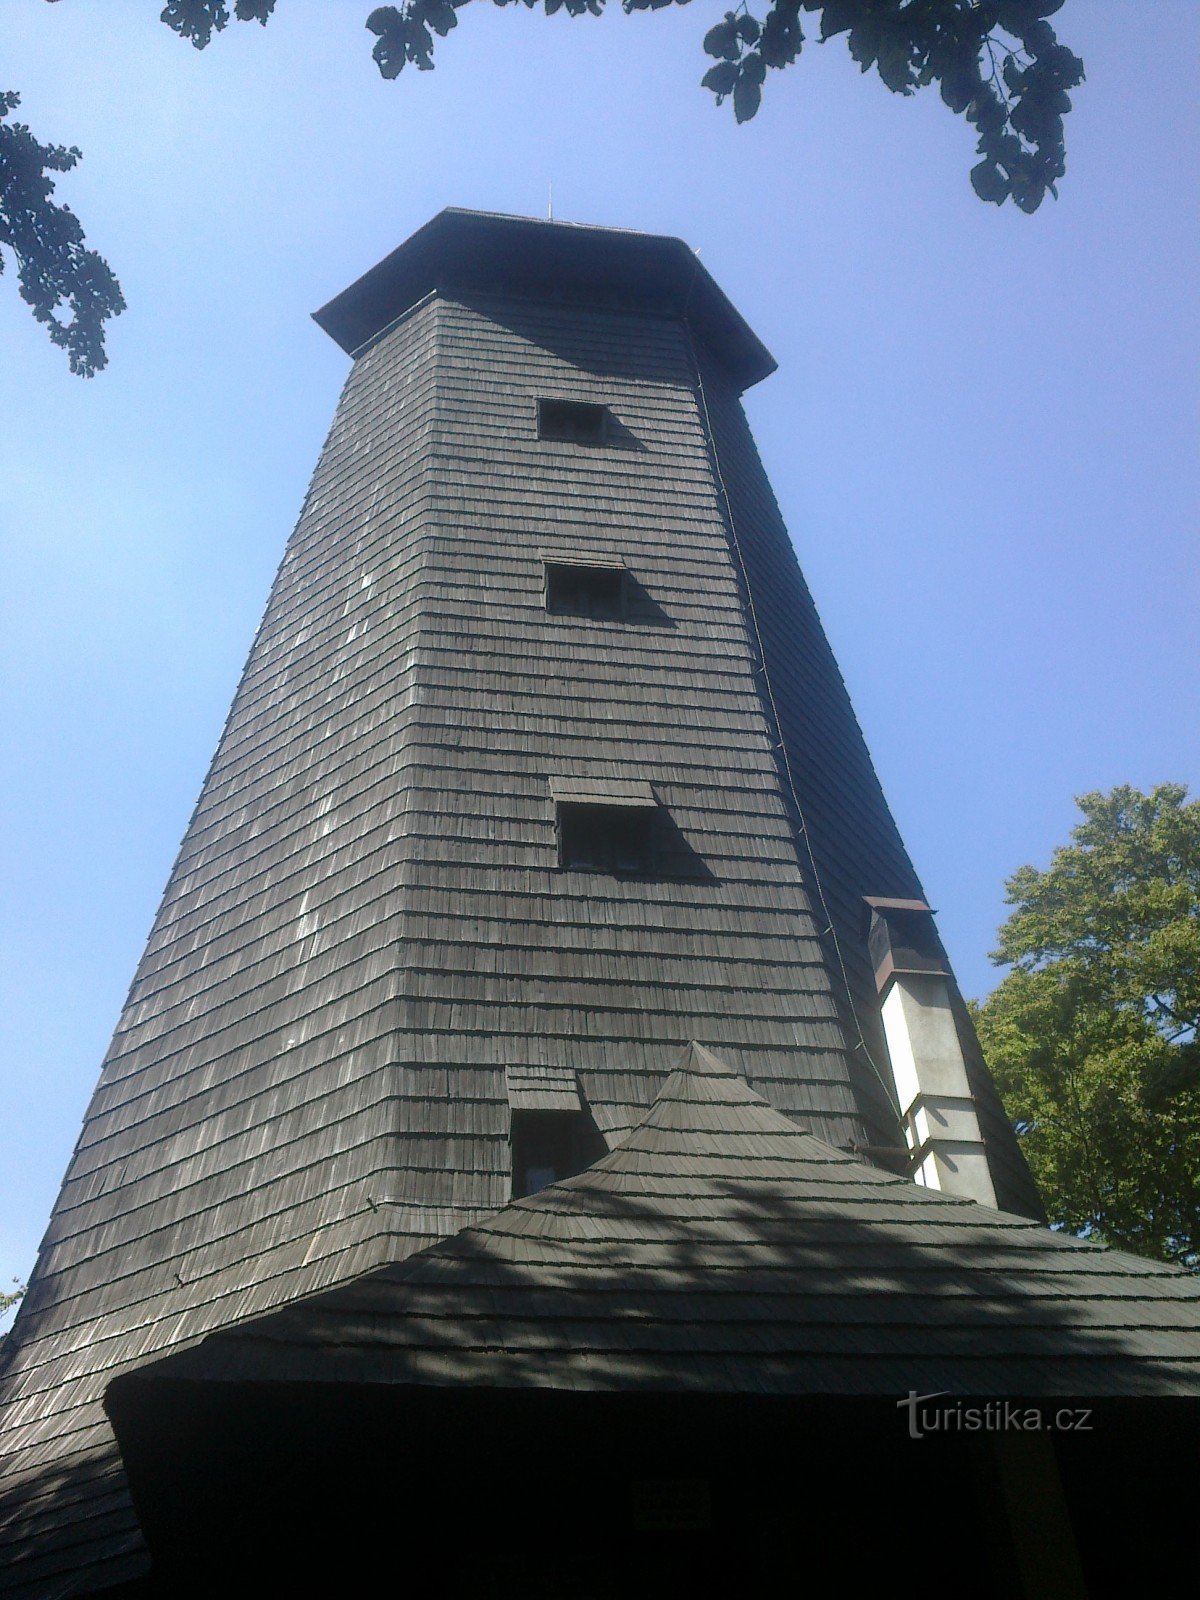 torre de vigia em Velky Blaník.